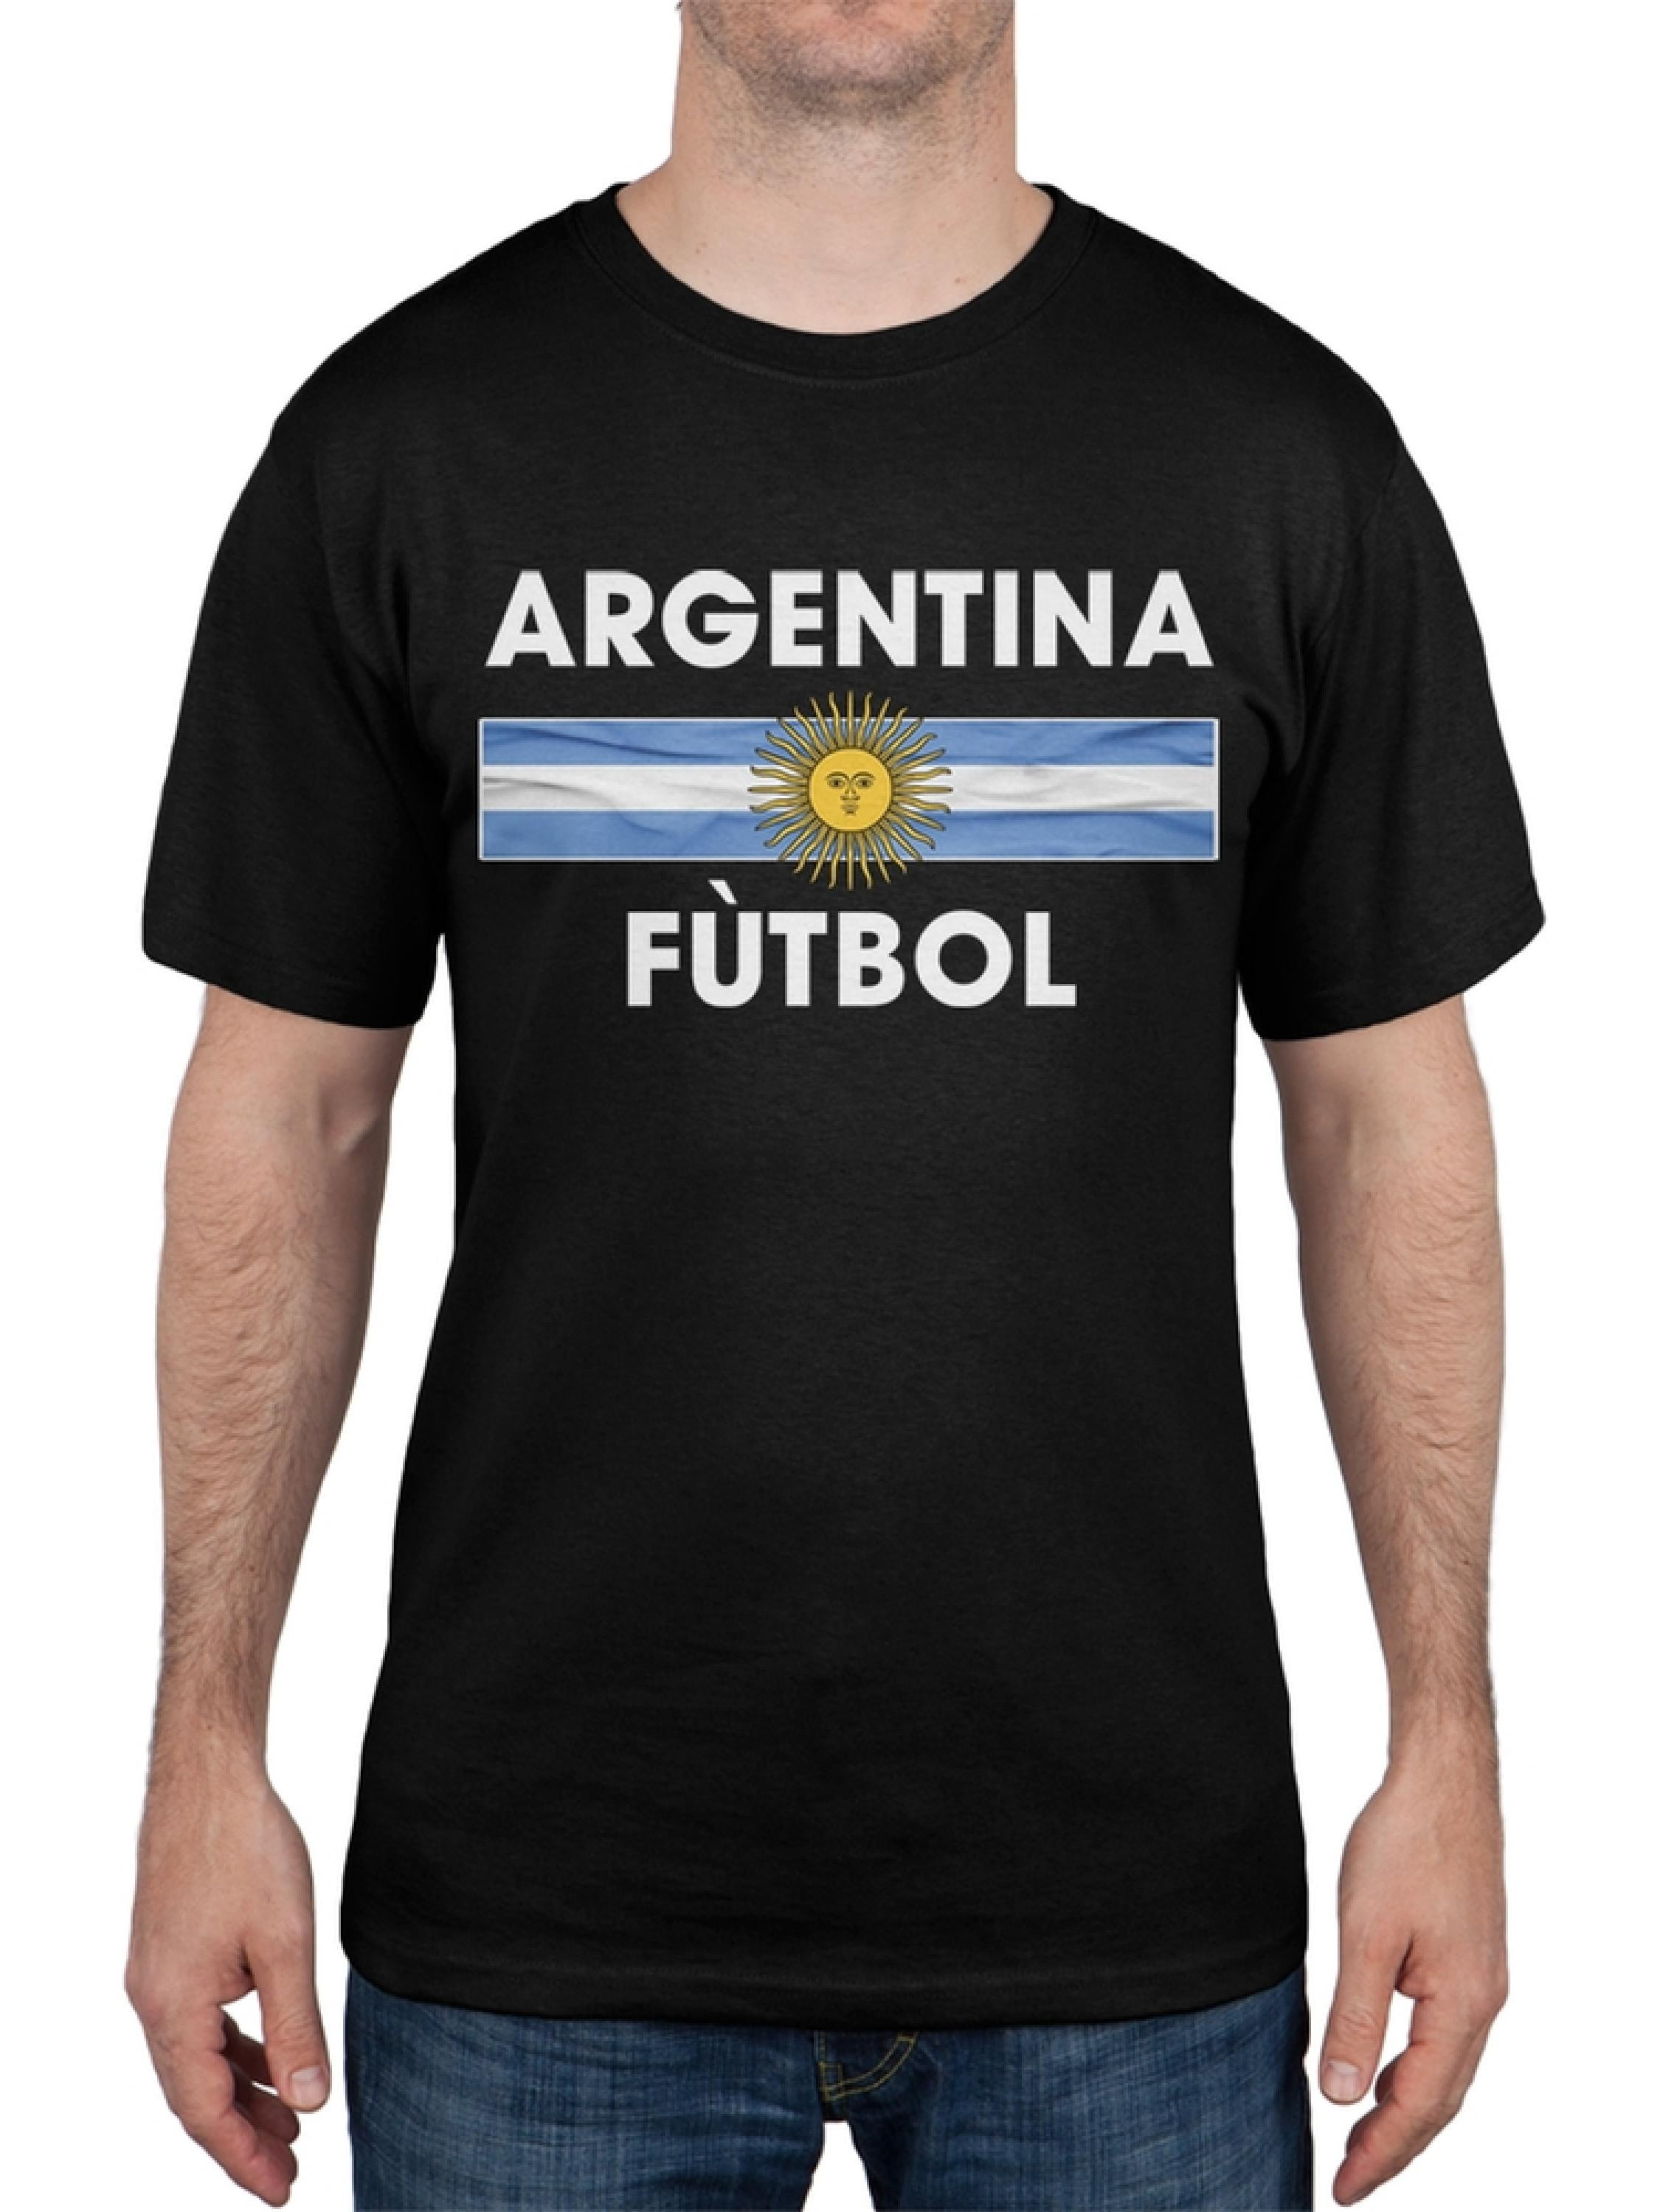 World Cup Argentina Crest Black Futbol Soccer TShirt XLarge